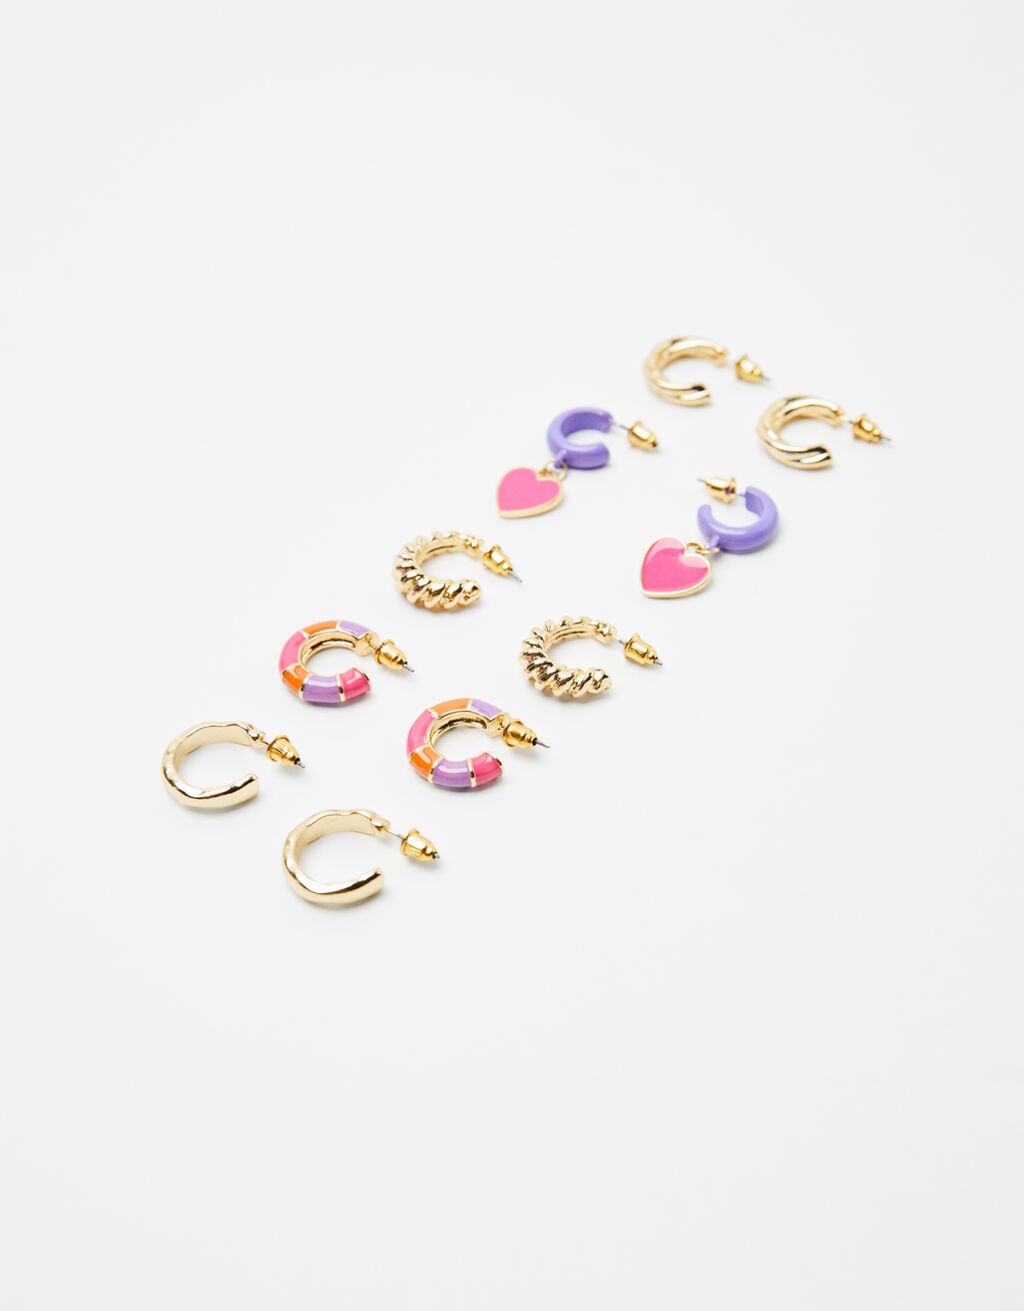 Set of 5 pairs of metal enamelled hoop earrings with charms